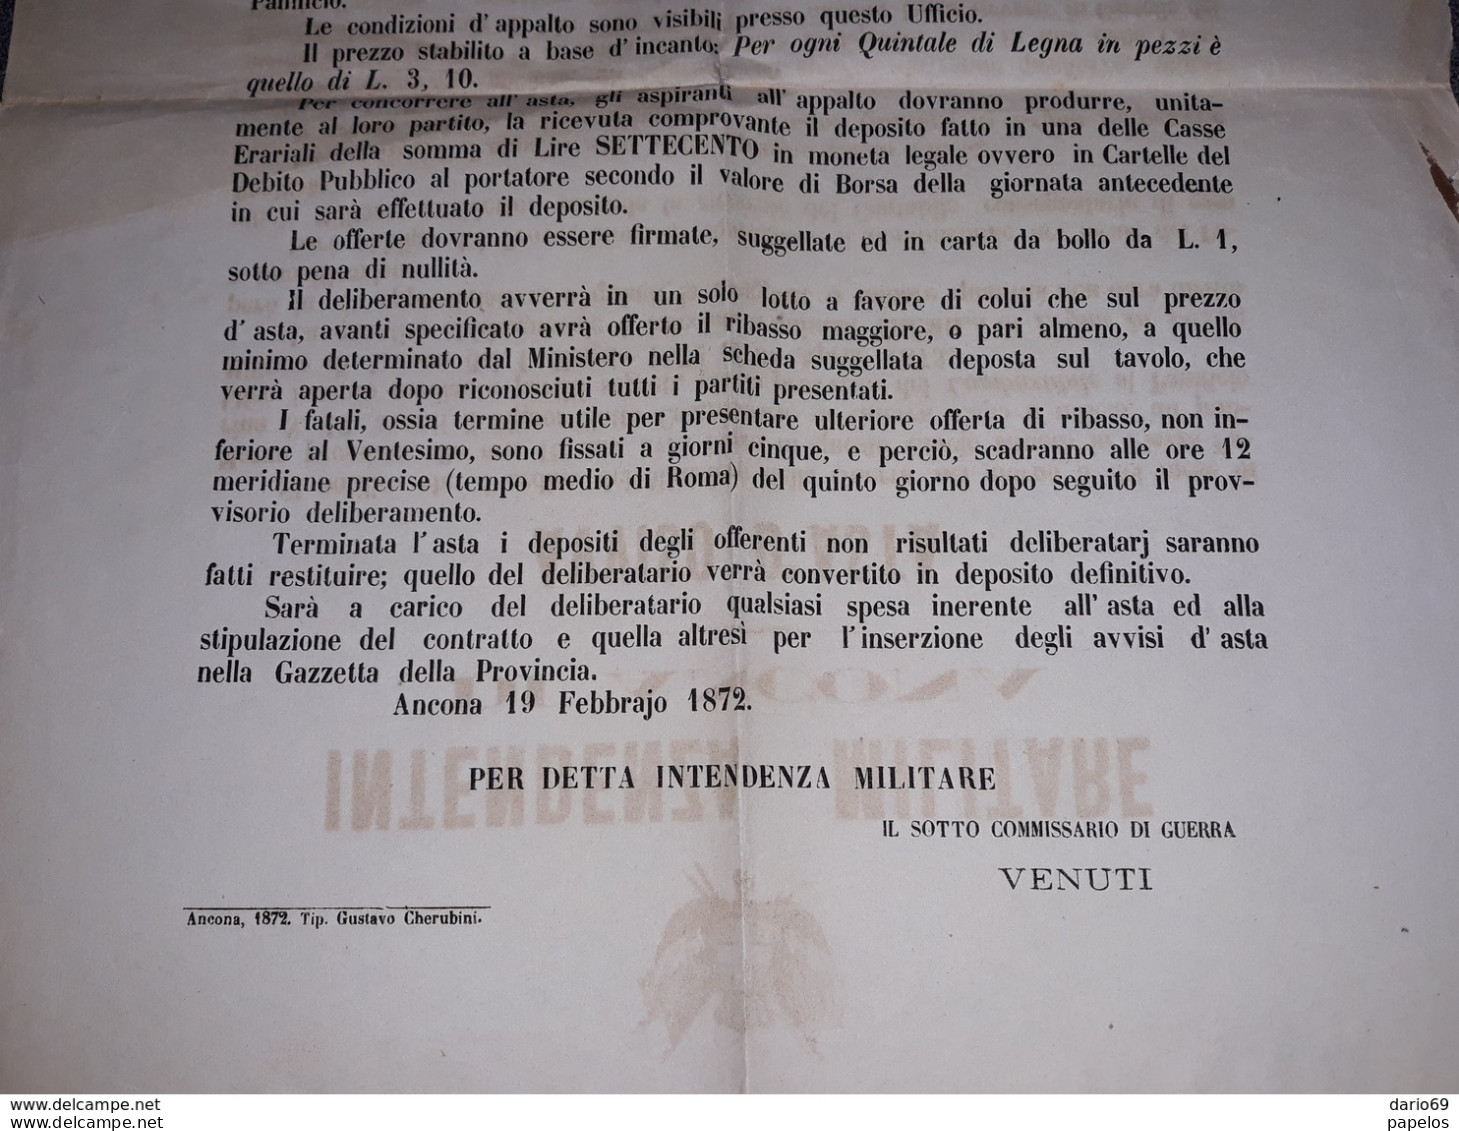 1872  MANIFESTO  INTENDENZA MILITARE DI ANCONA  AVVISO D'ASTA  PER IL COMBUSTIBILE AL PANIFICIO MILITARE - Historische Documenten